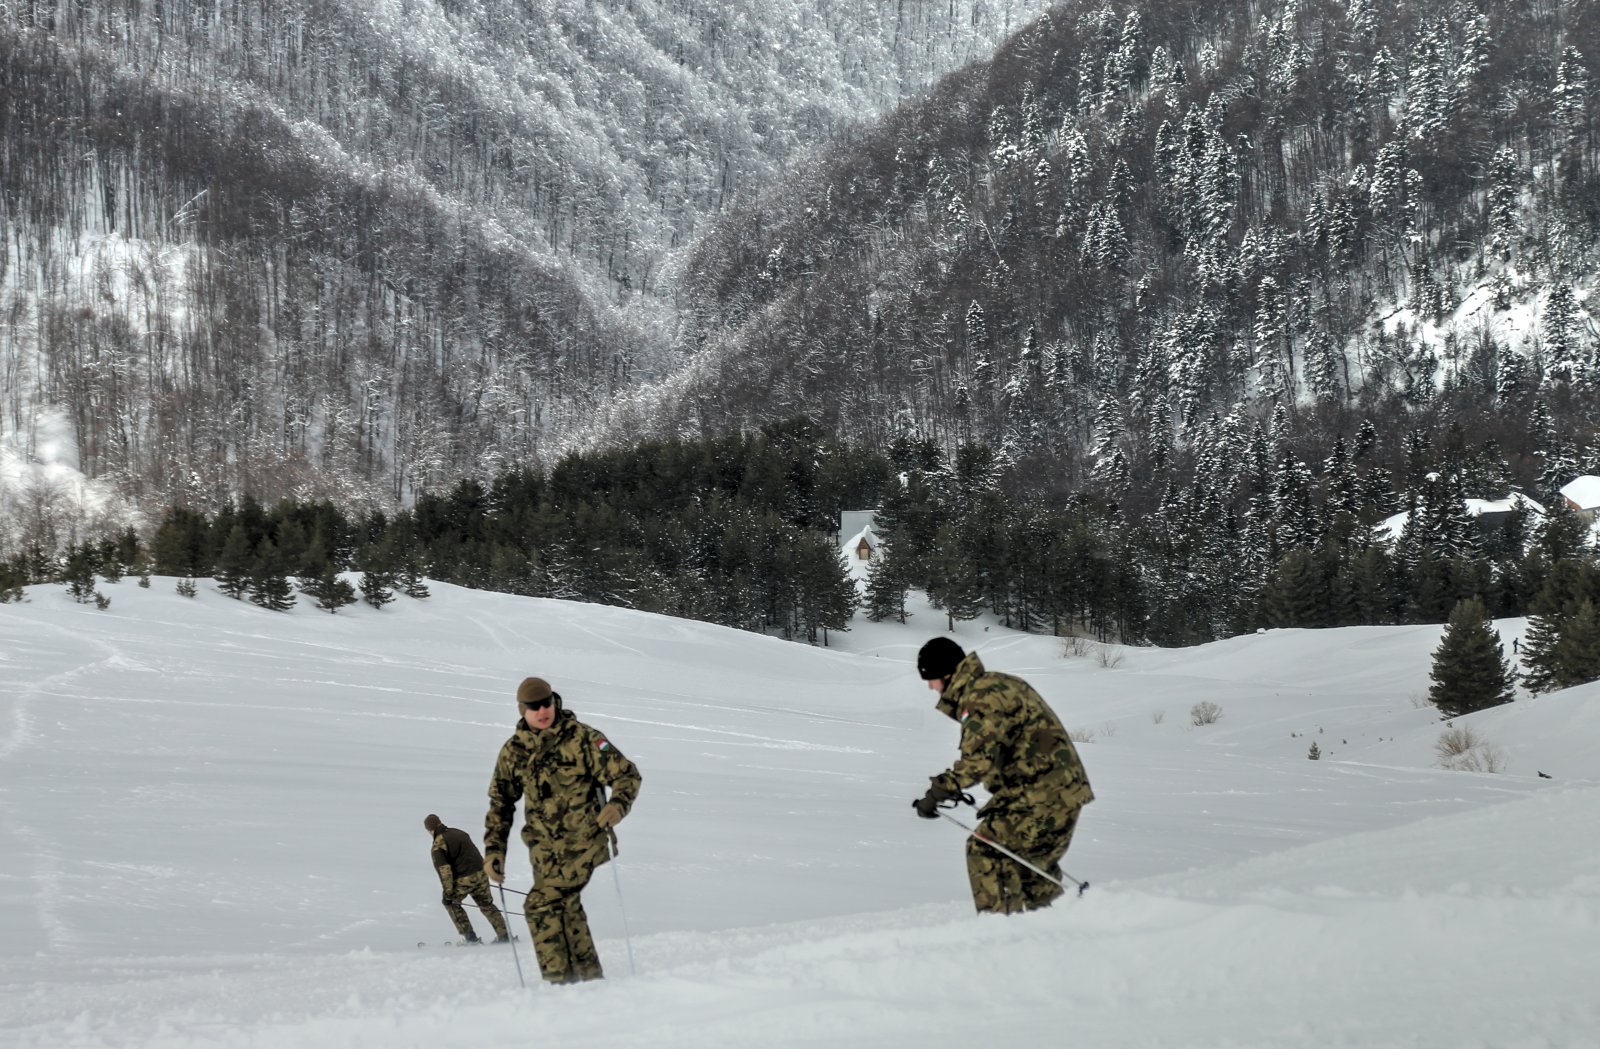 Magyar katonák síelnek  - Freeride síelés Koszovóban